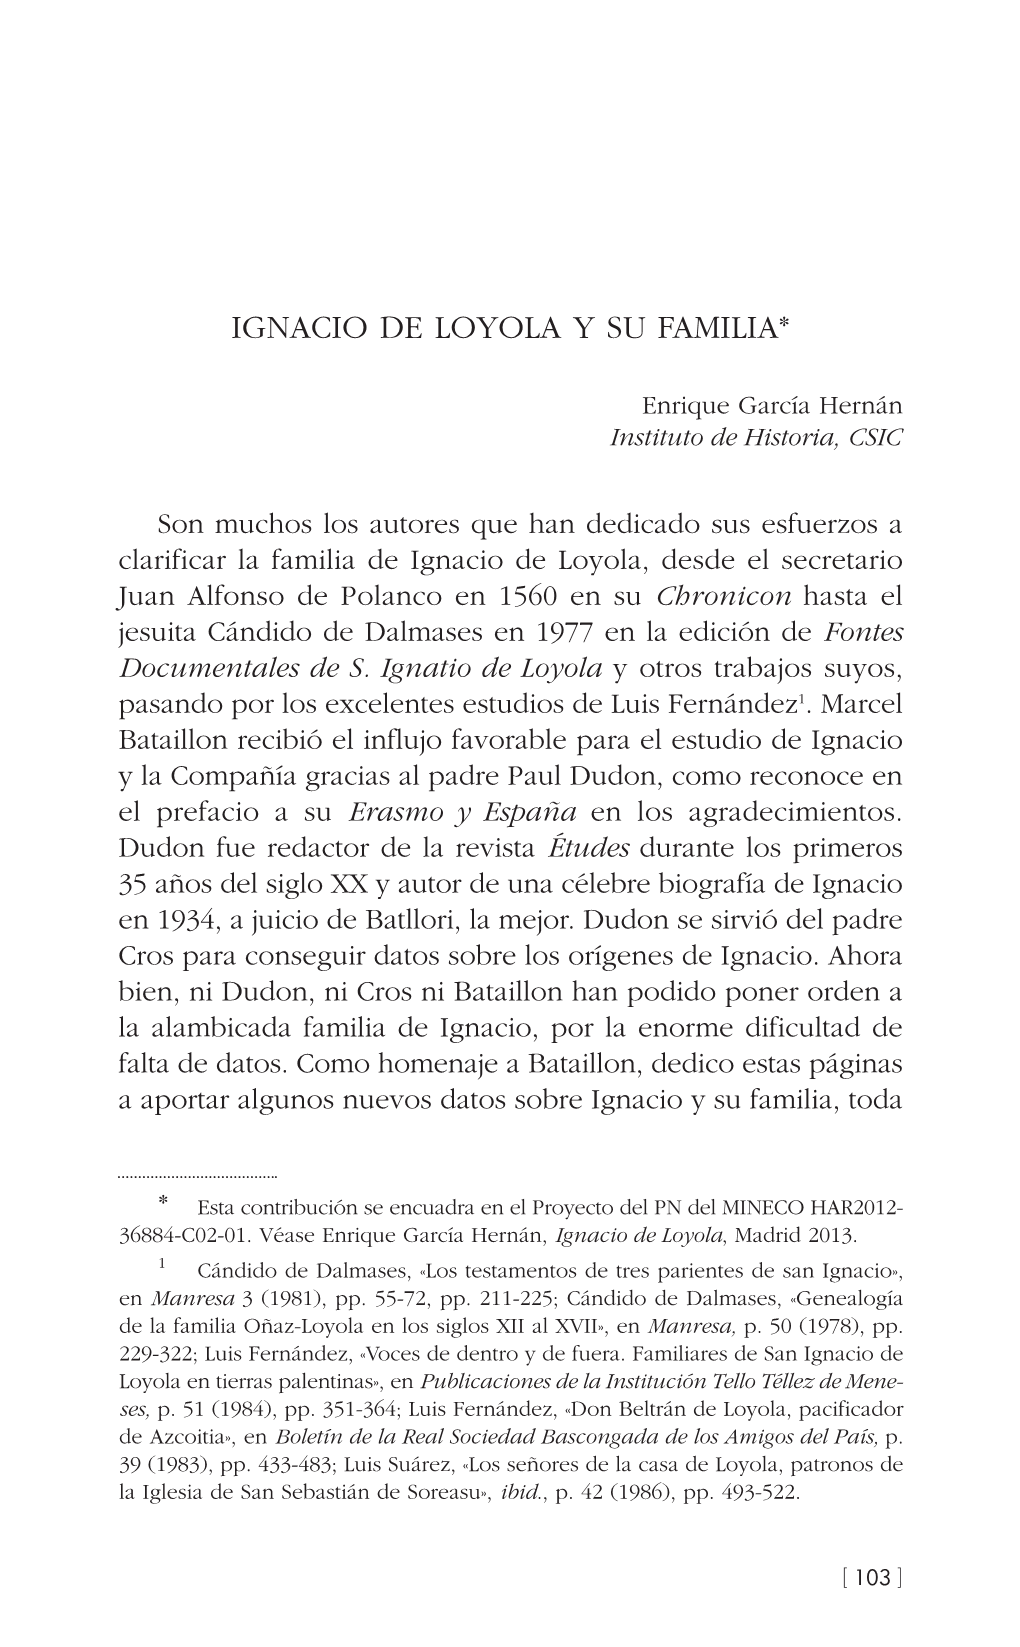 4. Ignacio De Loyola Y Su Familia, Por Enrique García Hernán